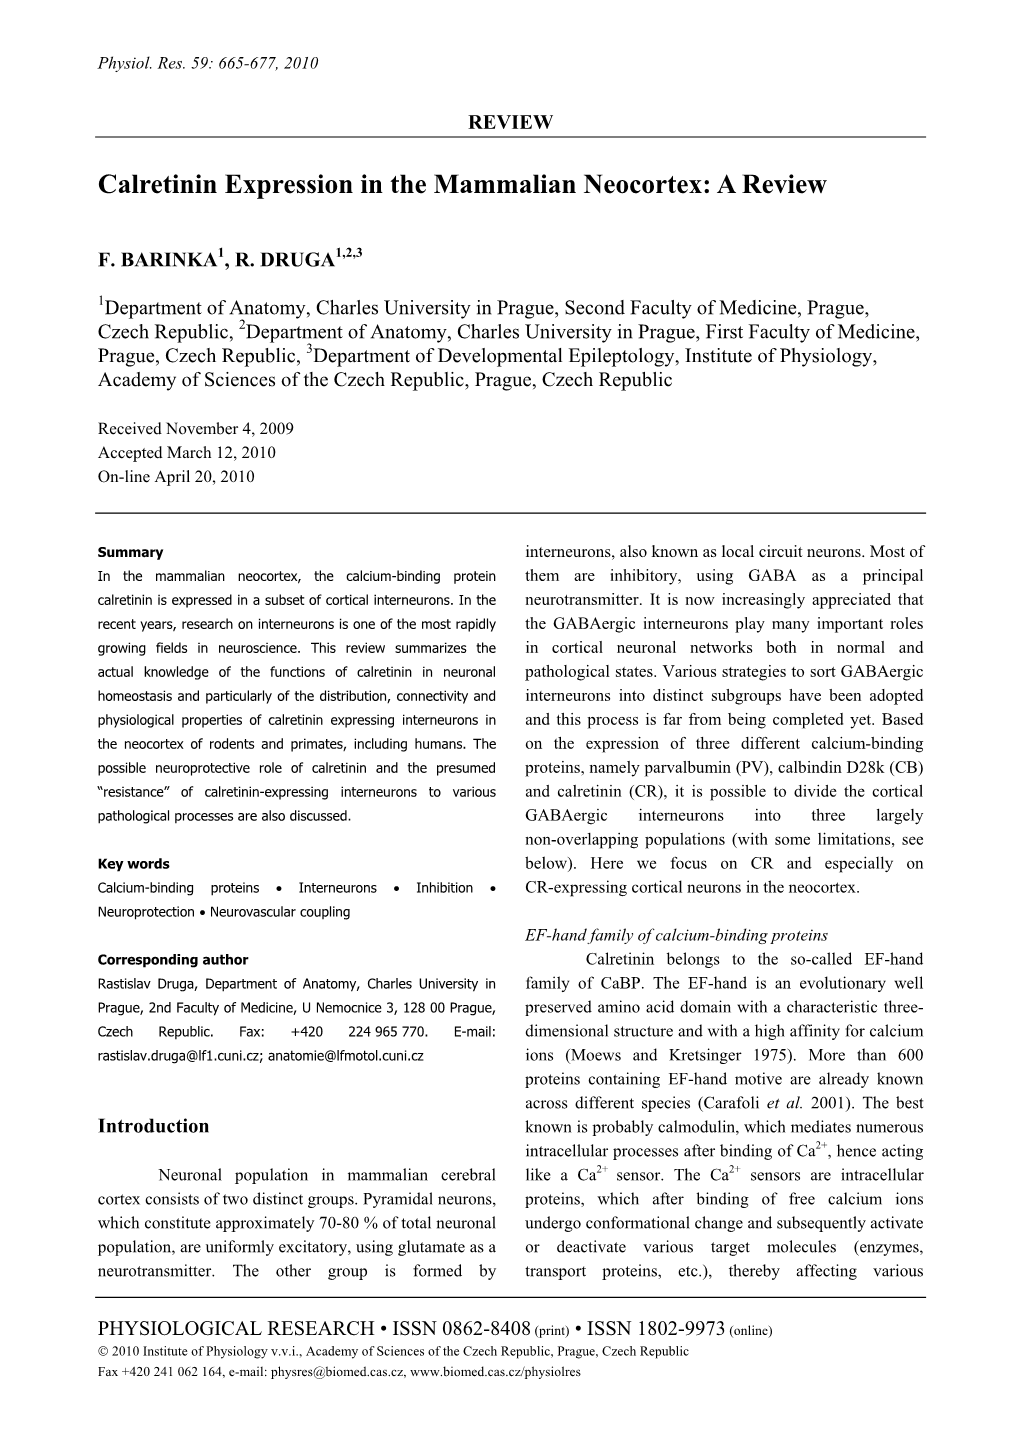 Calretinin Expression in the Mammalian Neocortex: a Review